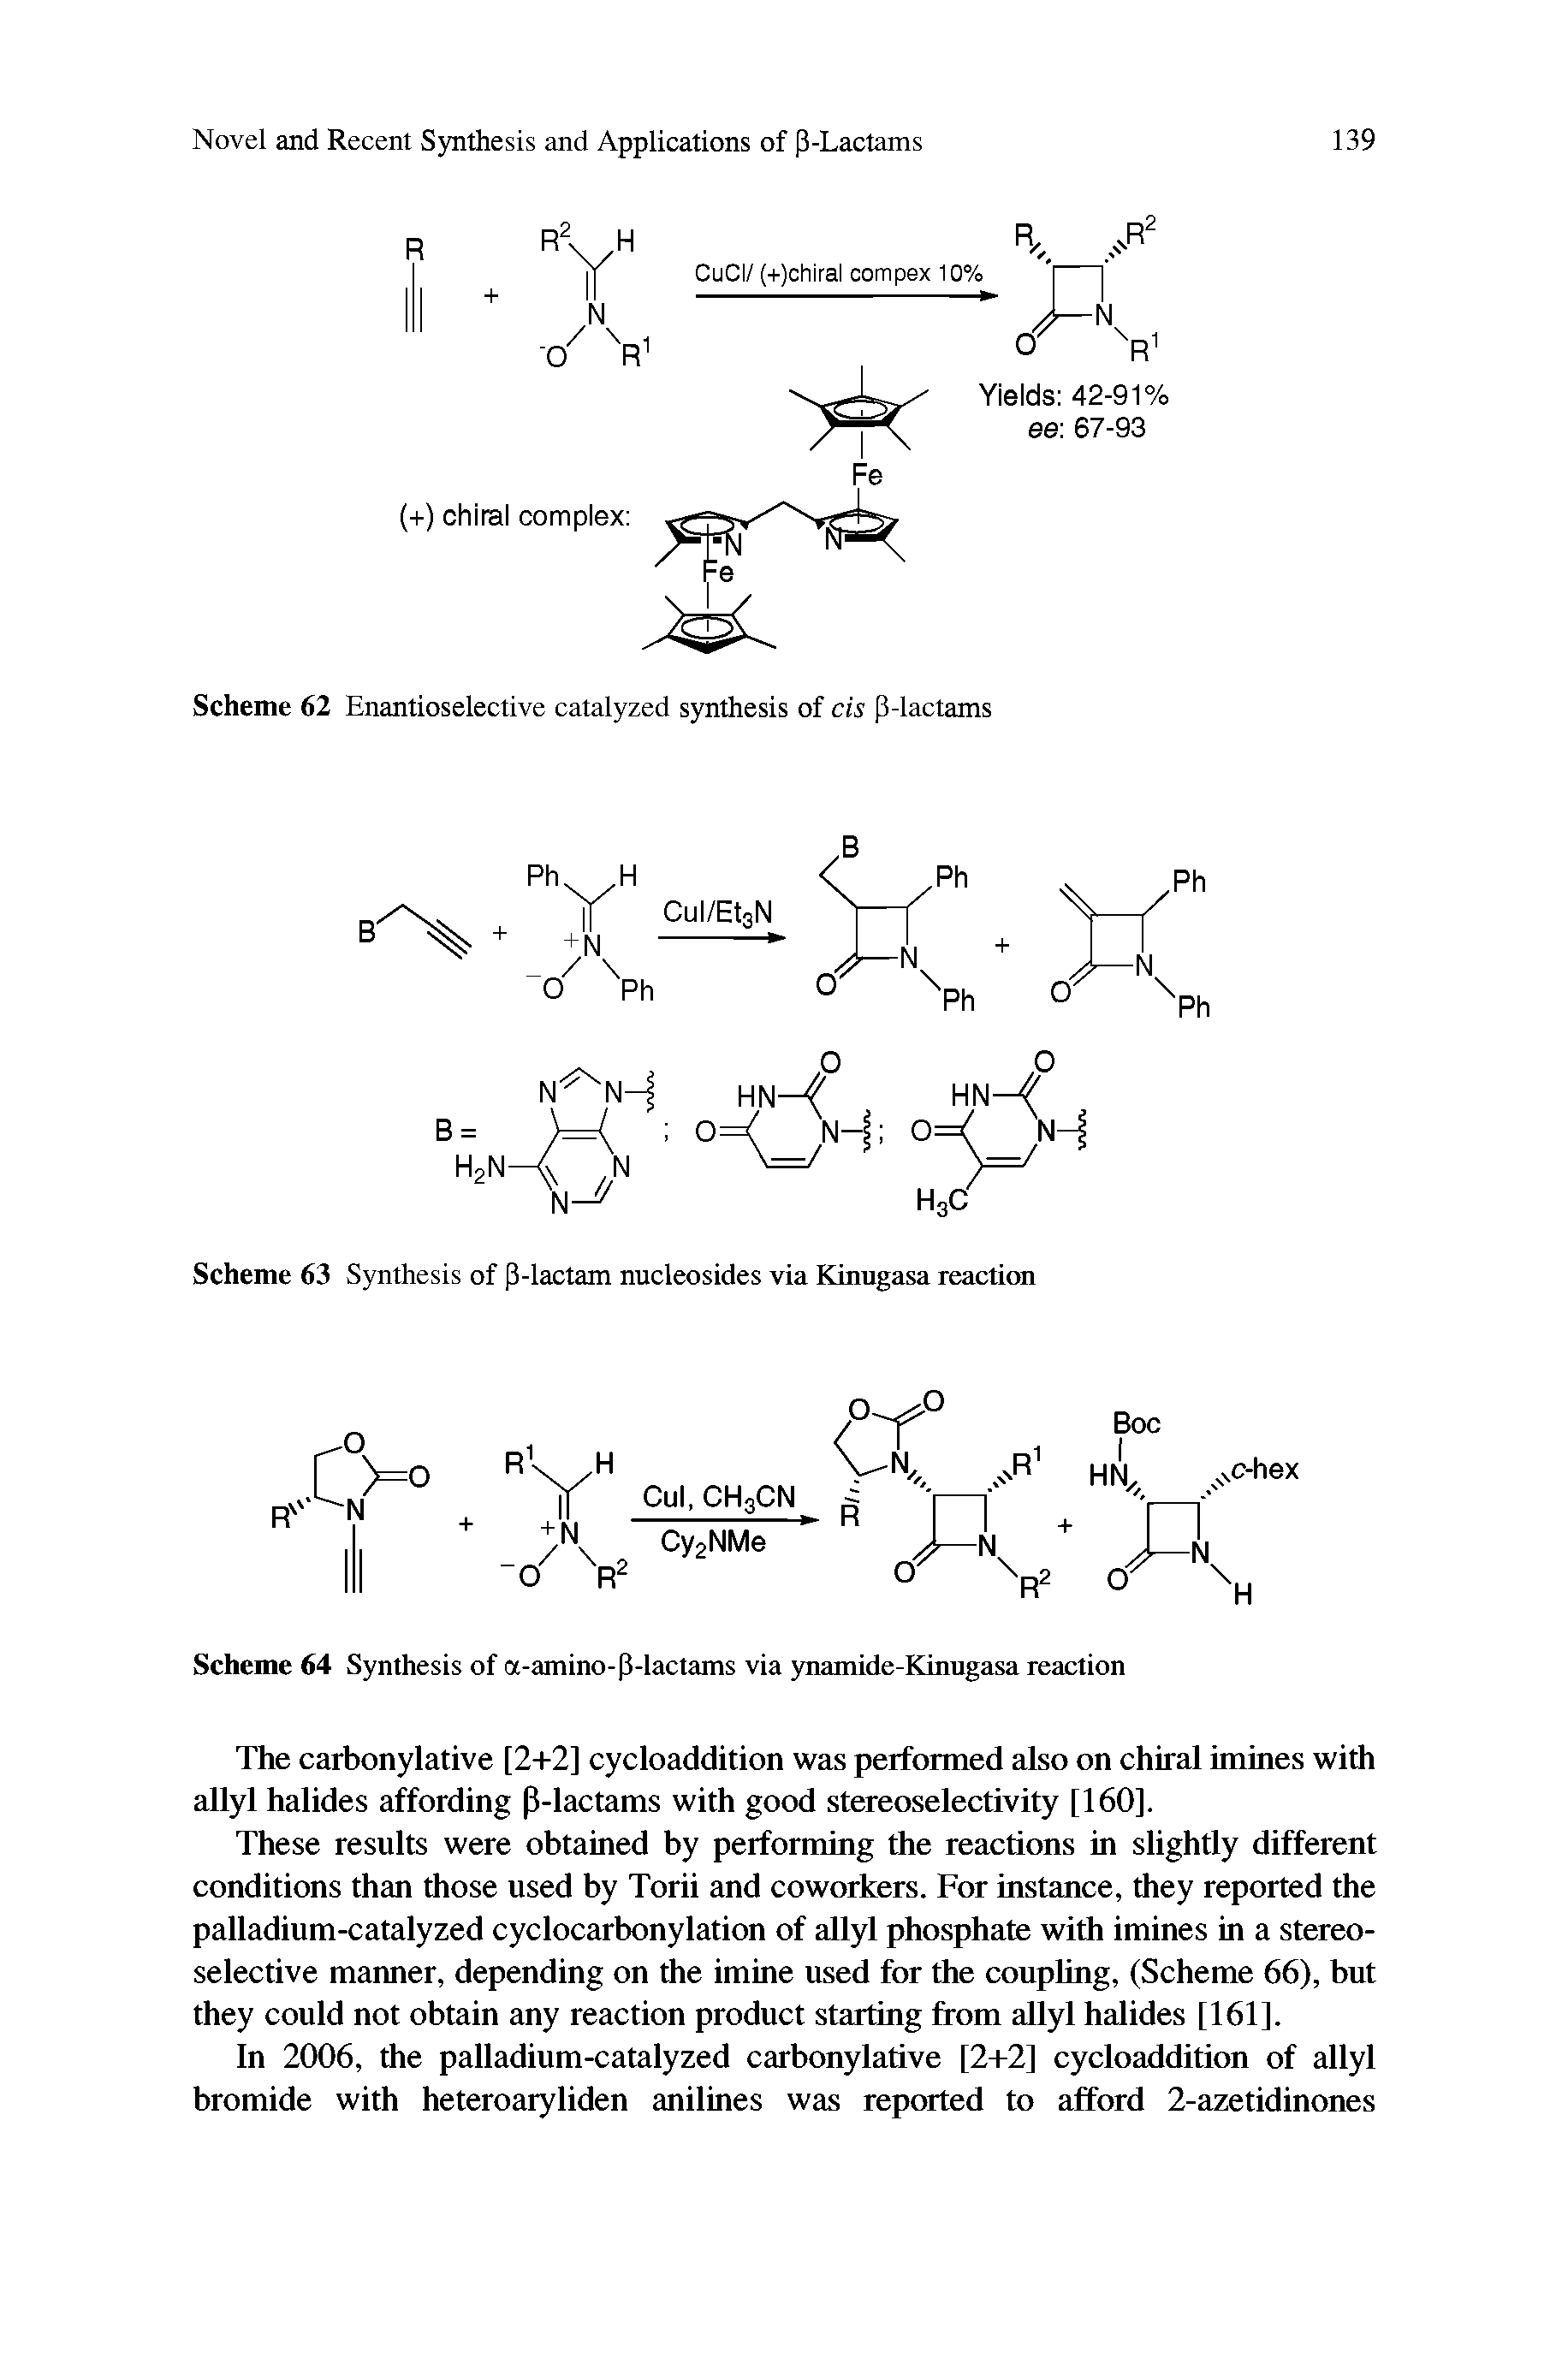 Scheme 63 Synthesis of (3-lactam nucleosides via Kinugasa reaction...